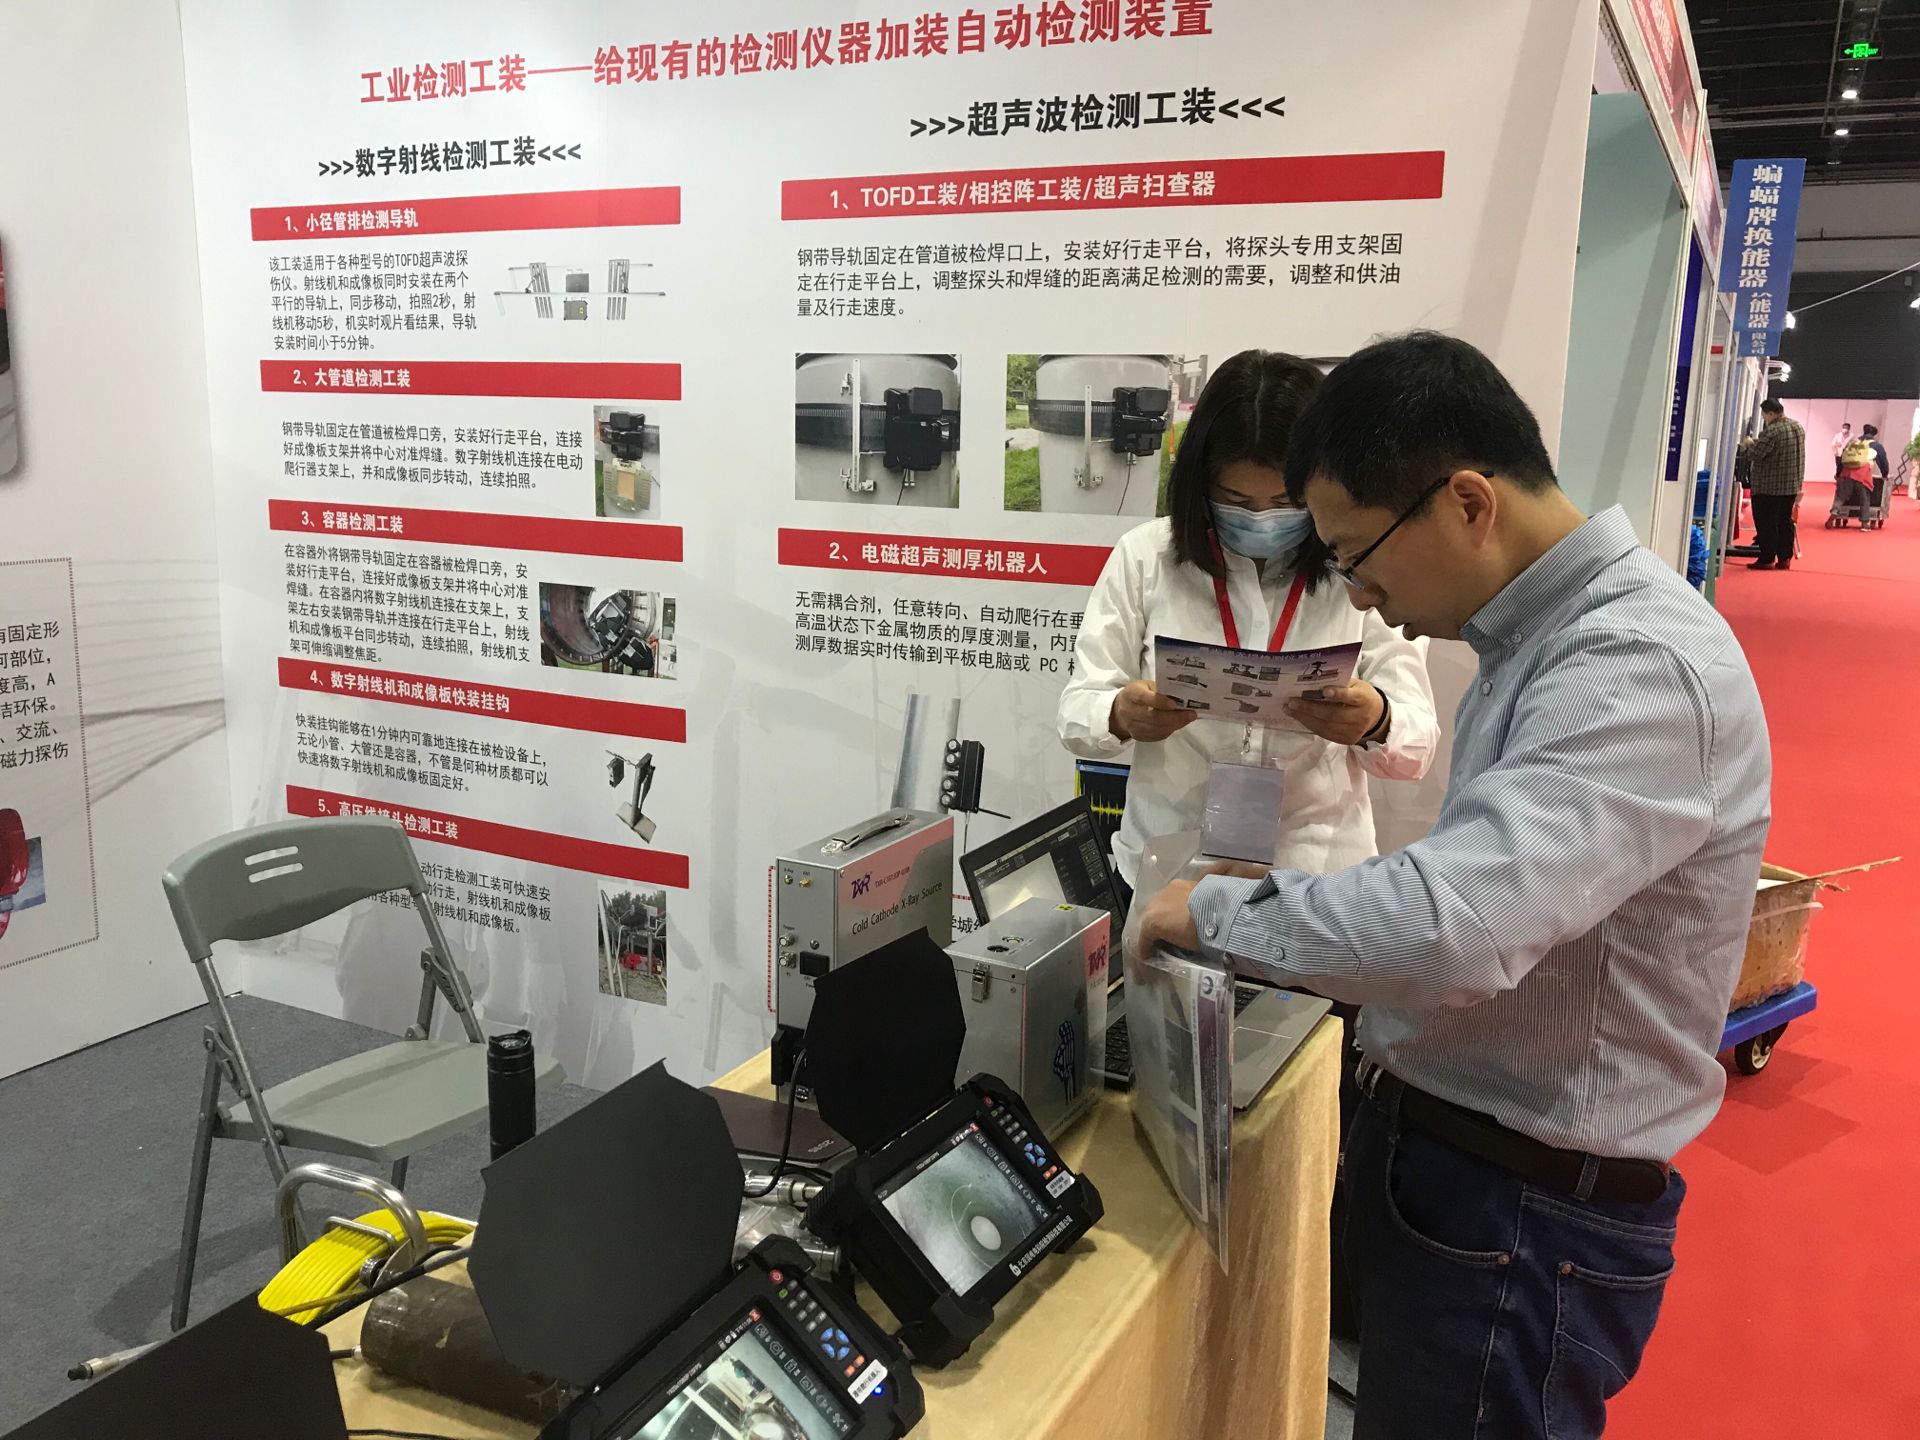 公司新产品数字射线检测工装在上海、廊坊展会大放异彩